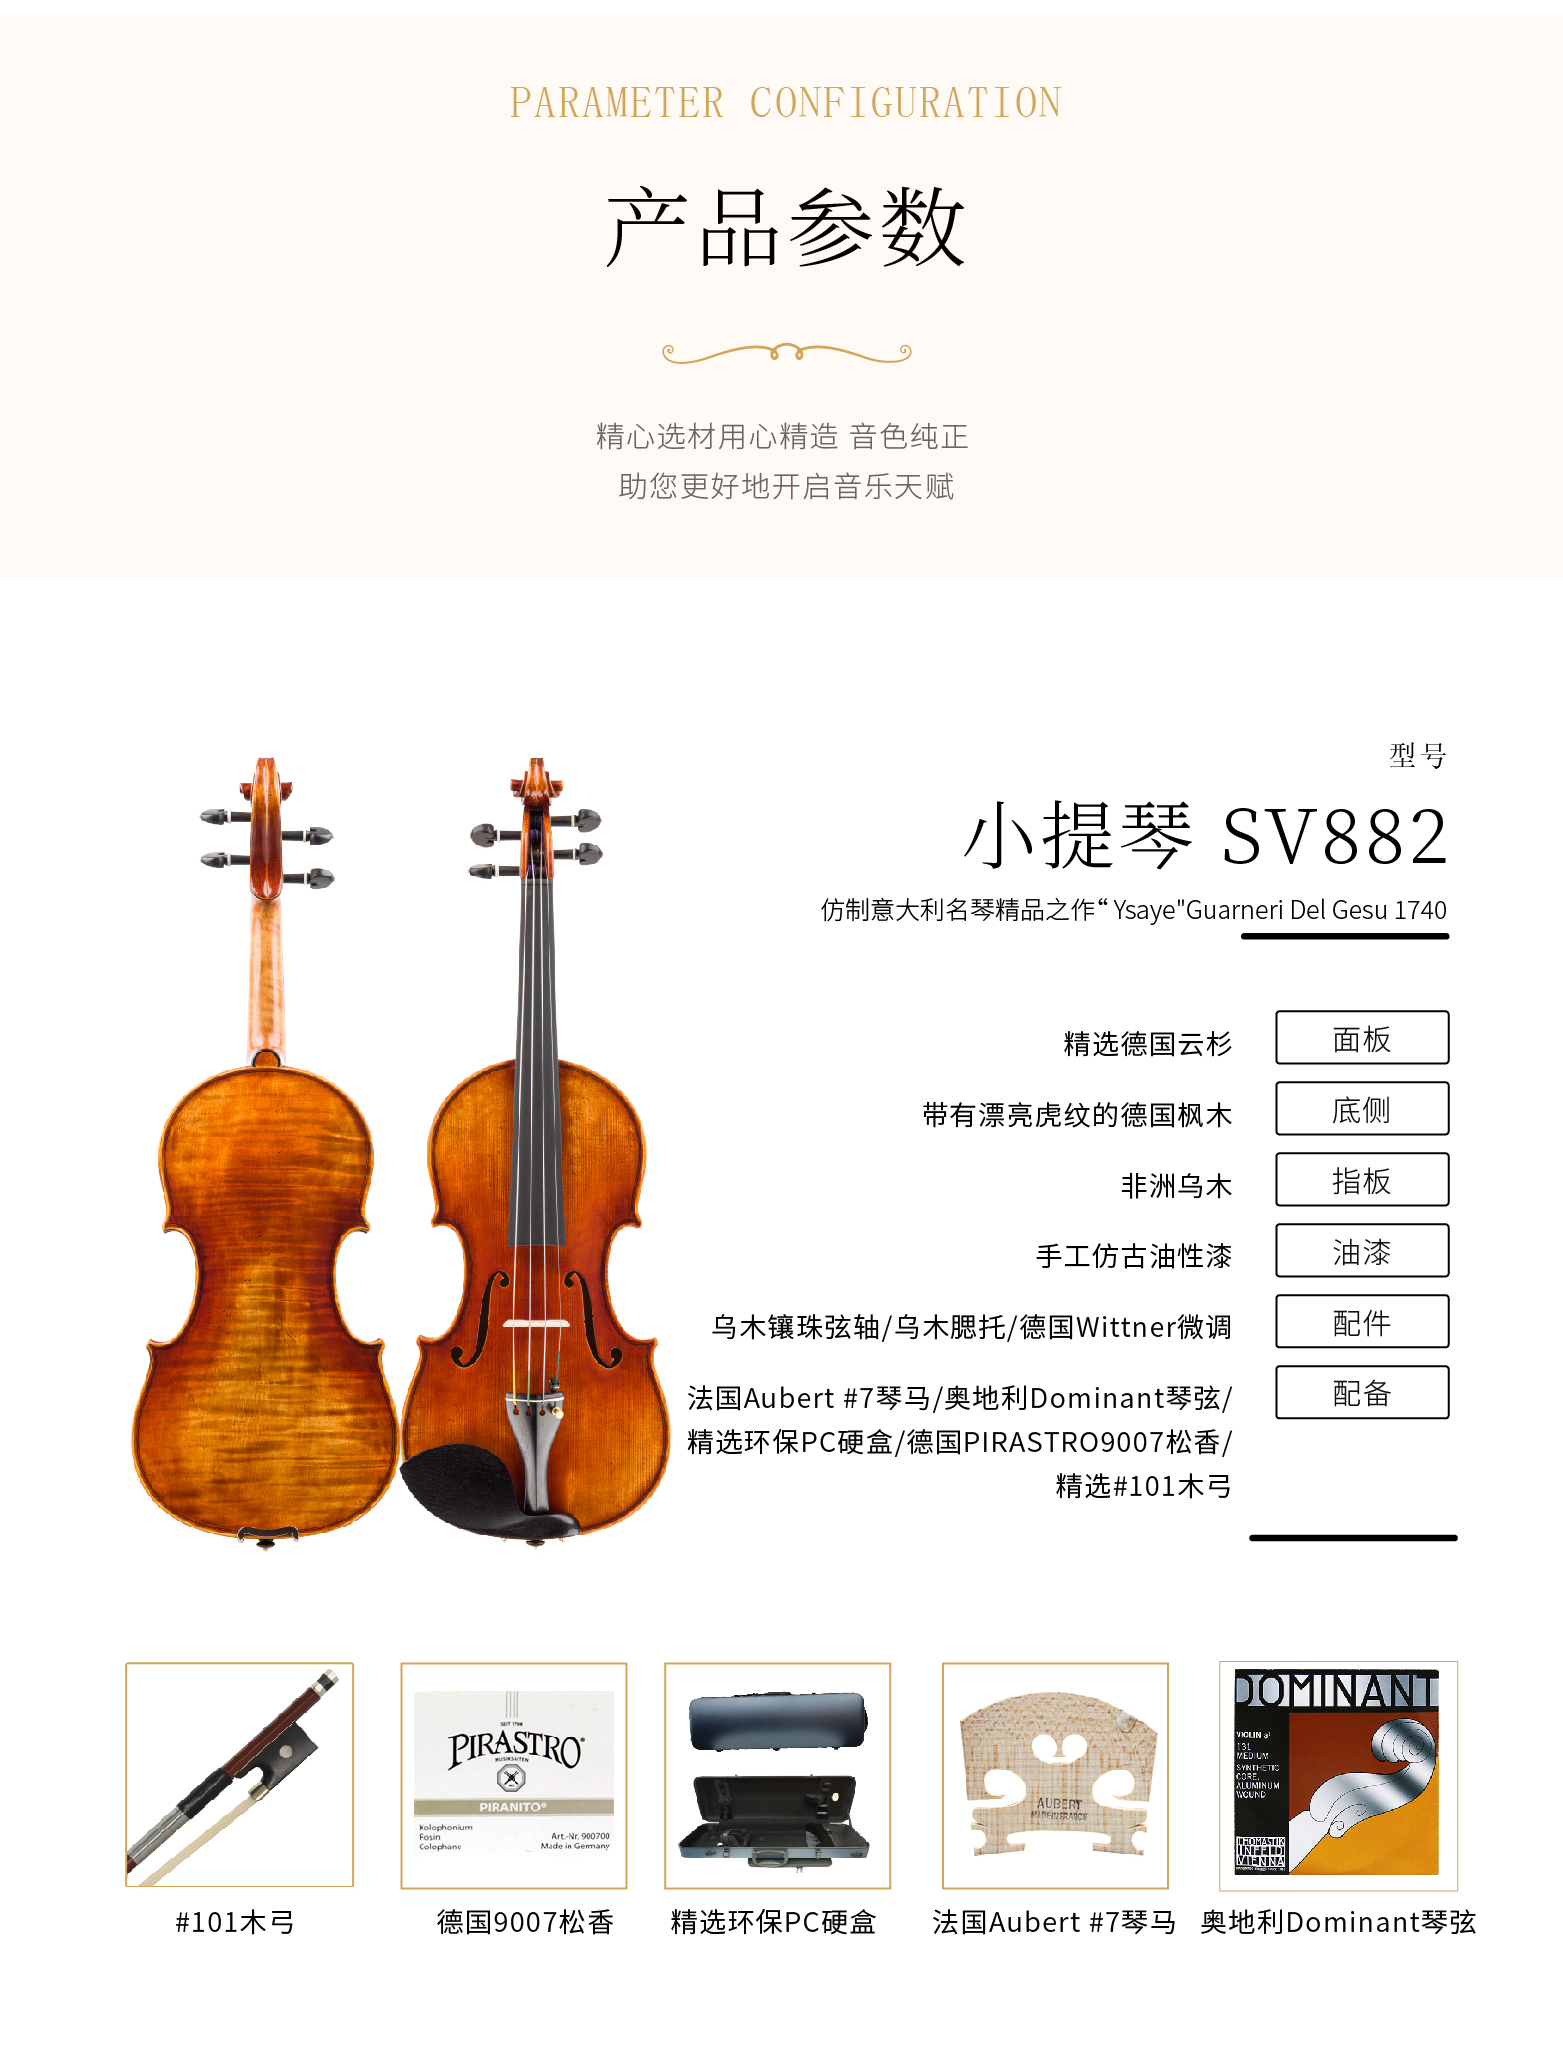 熙珑乐器专营店-详情-v1-2_SV882小提琴_复制_PC-副本-2_03.png